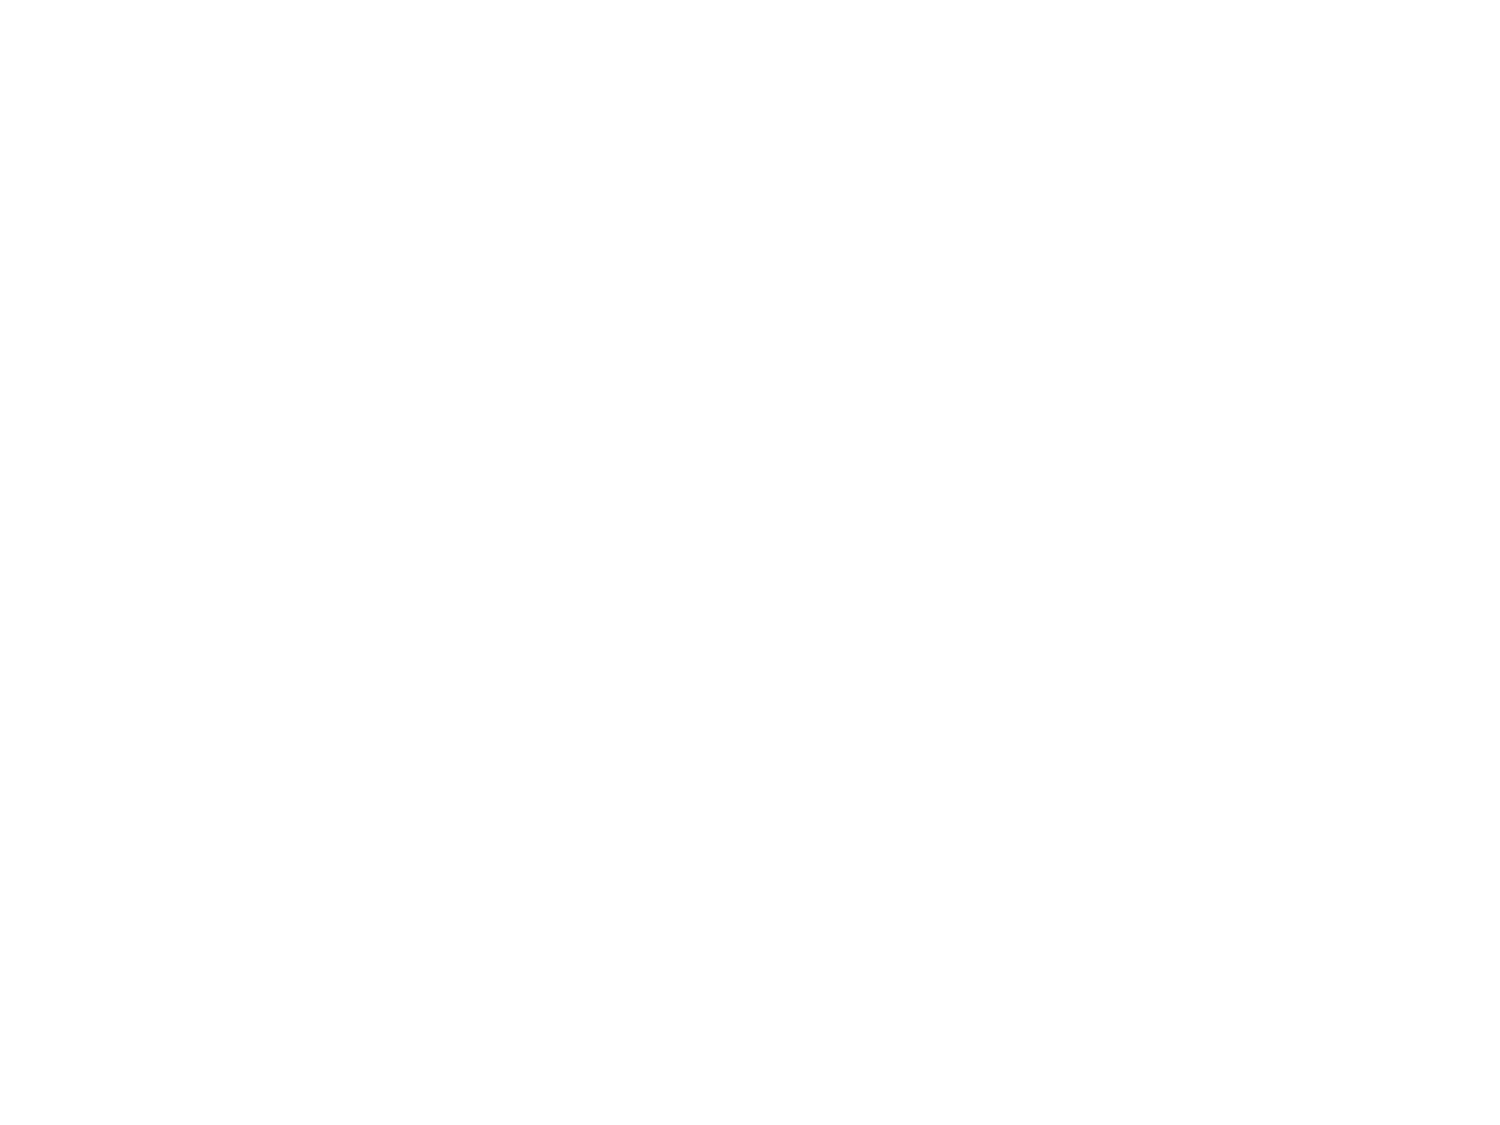 red banjo studios